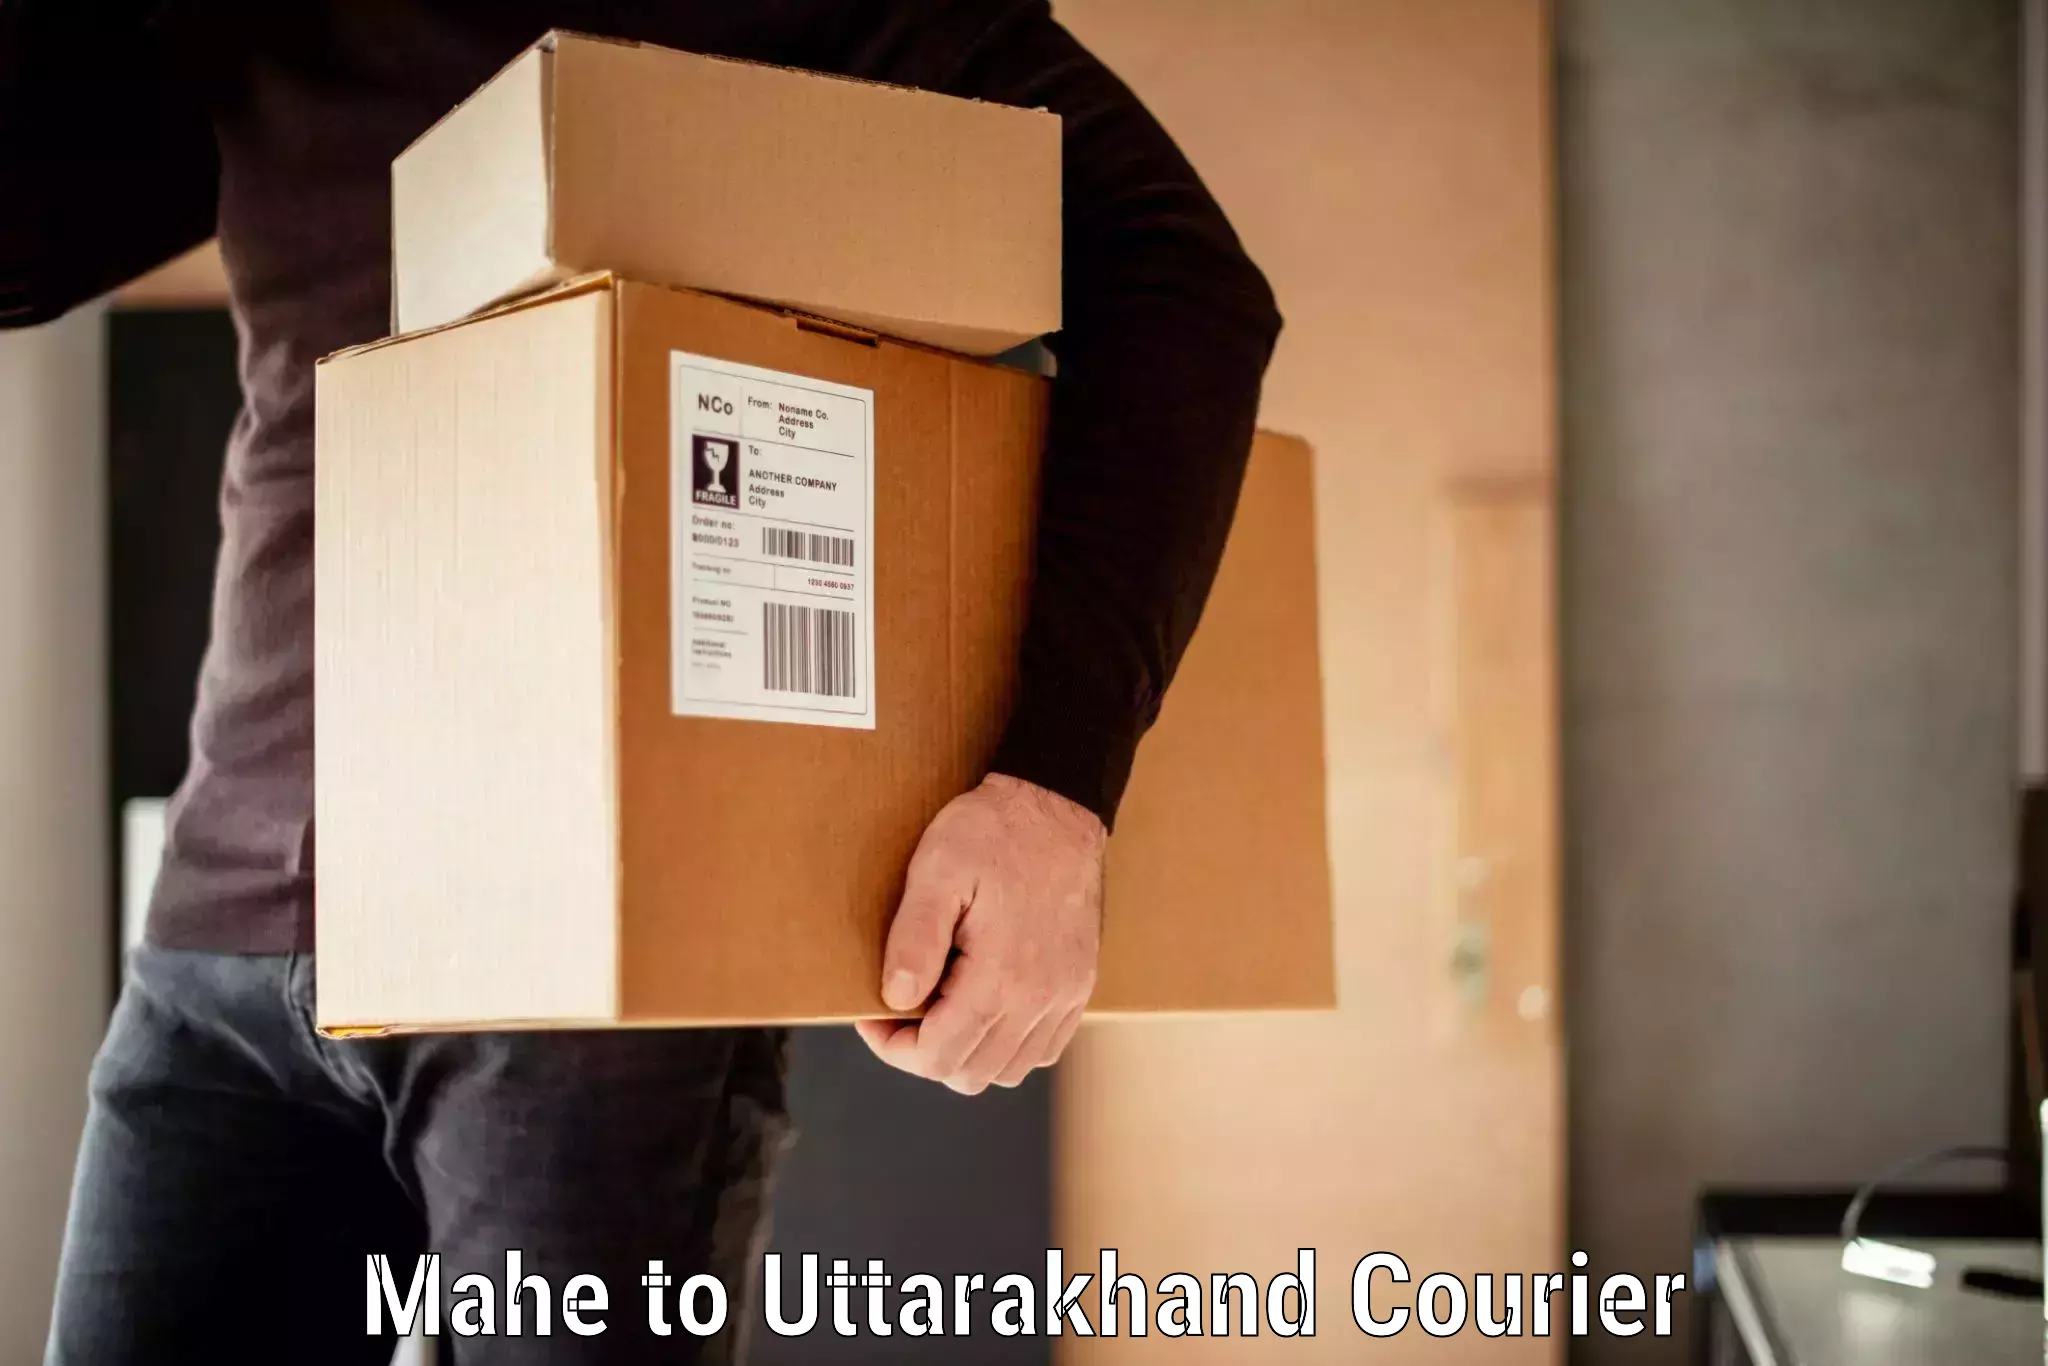 Luggage shipping specialists Mahe to Uttarakhand